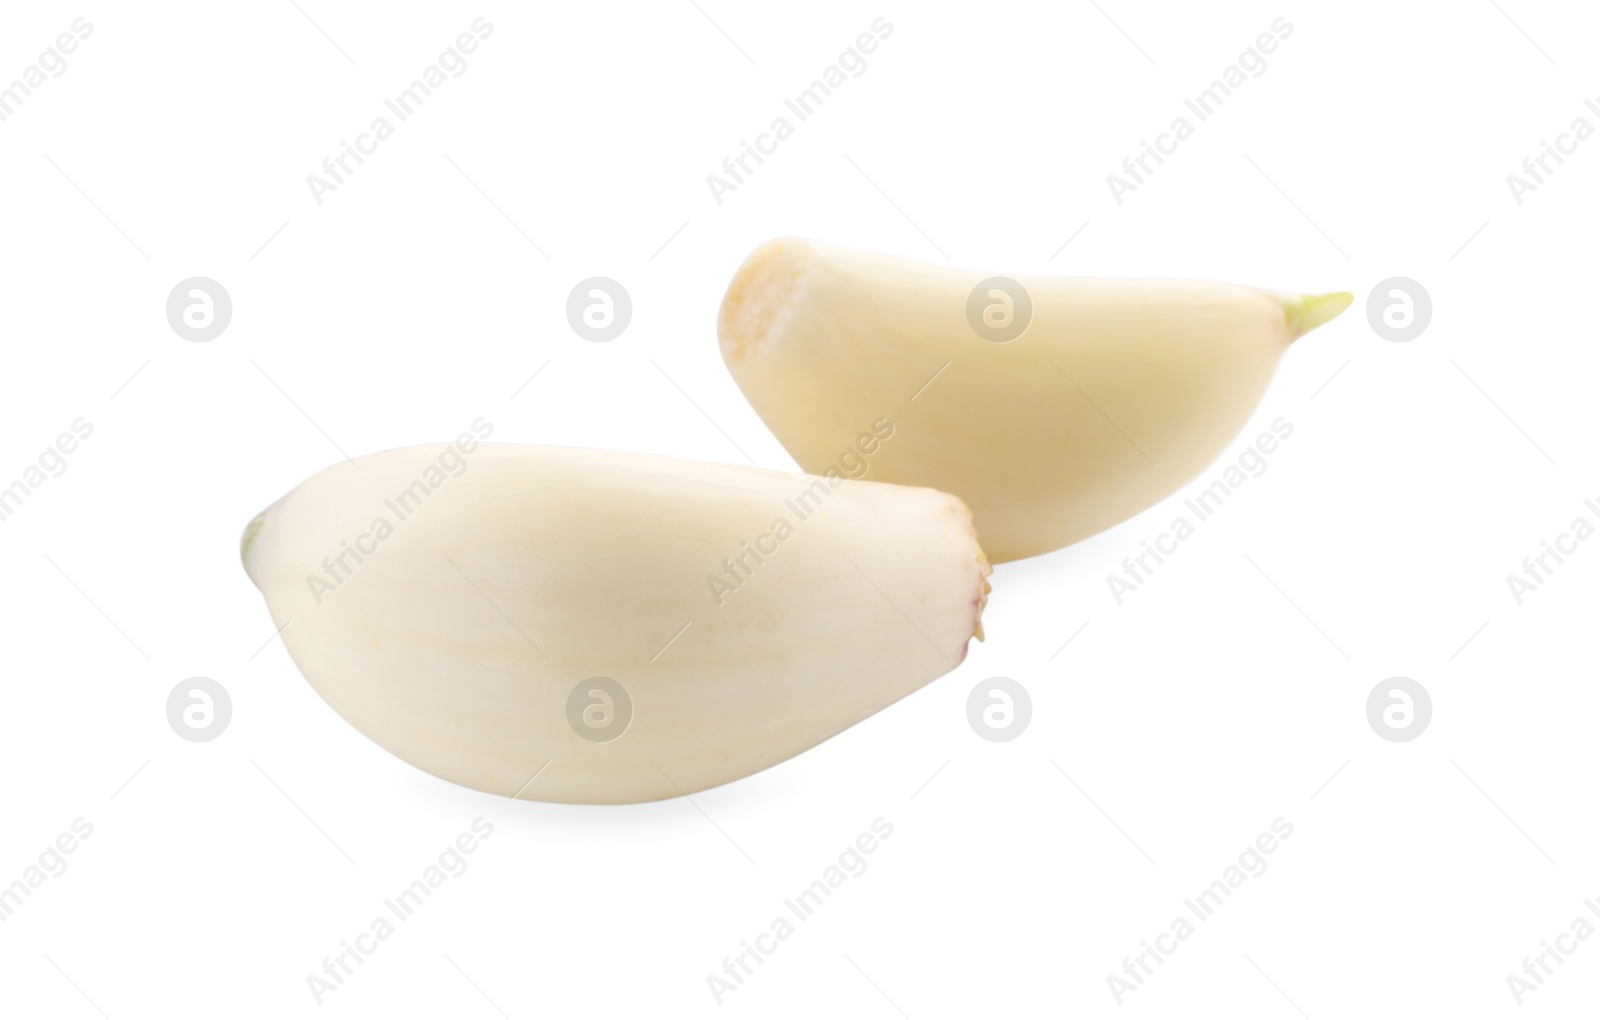 Photo of Peeled cloves of garlic isolated on white